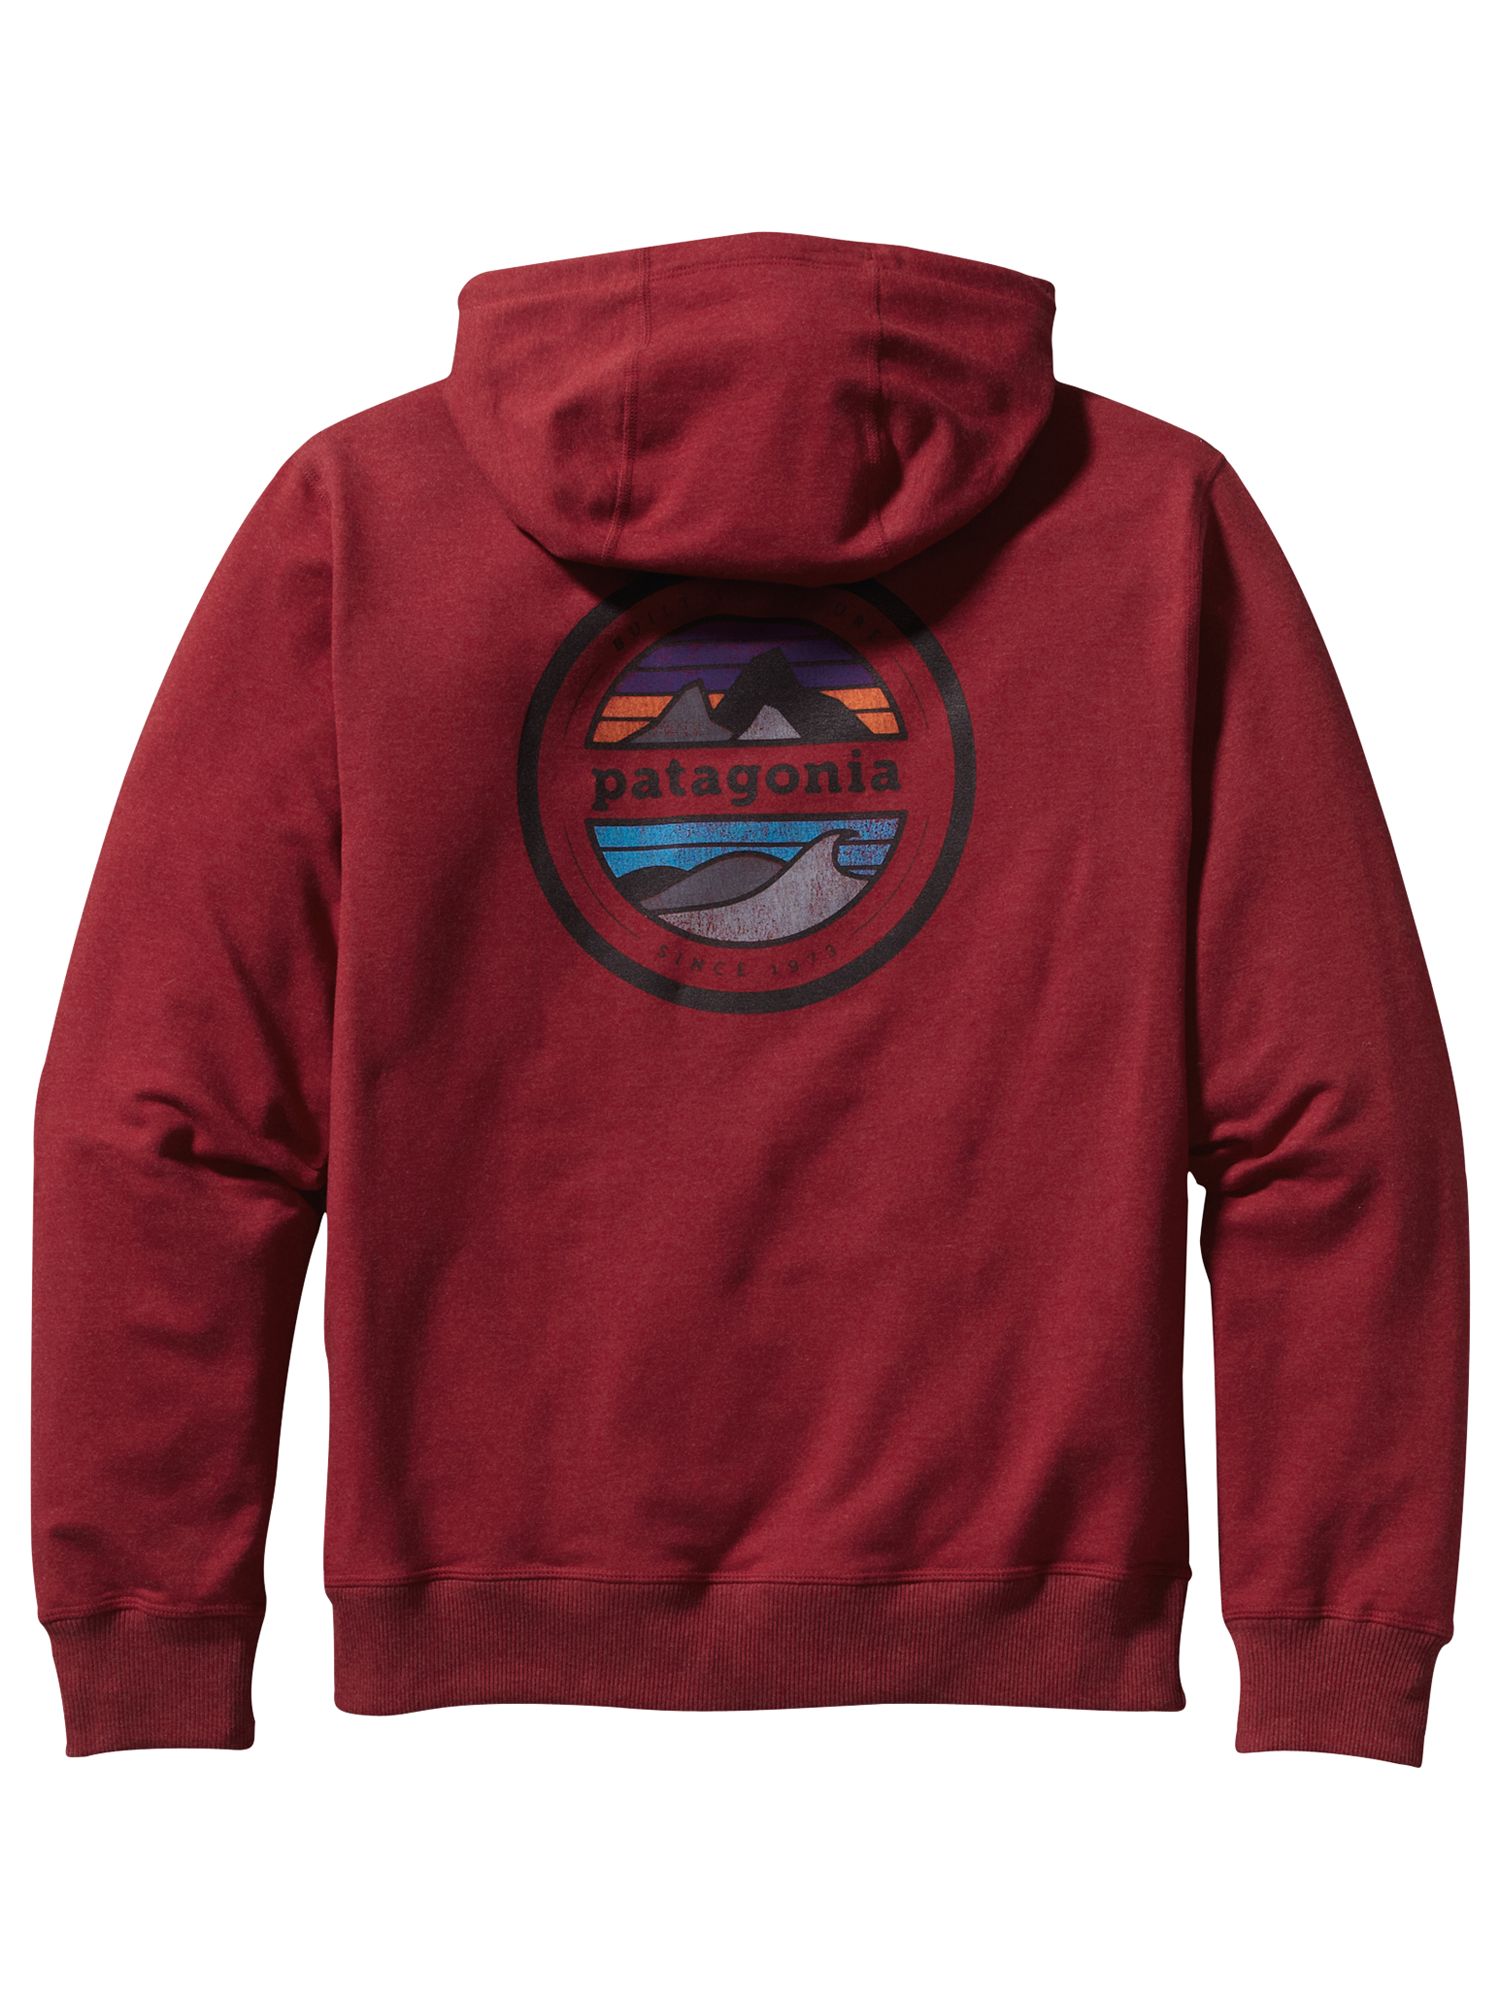 patagonia red hoodie